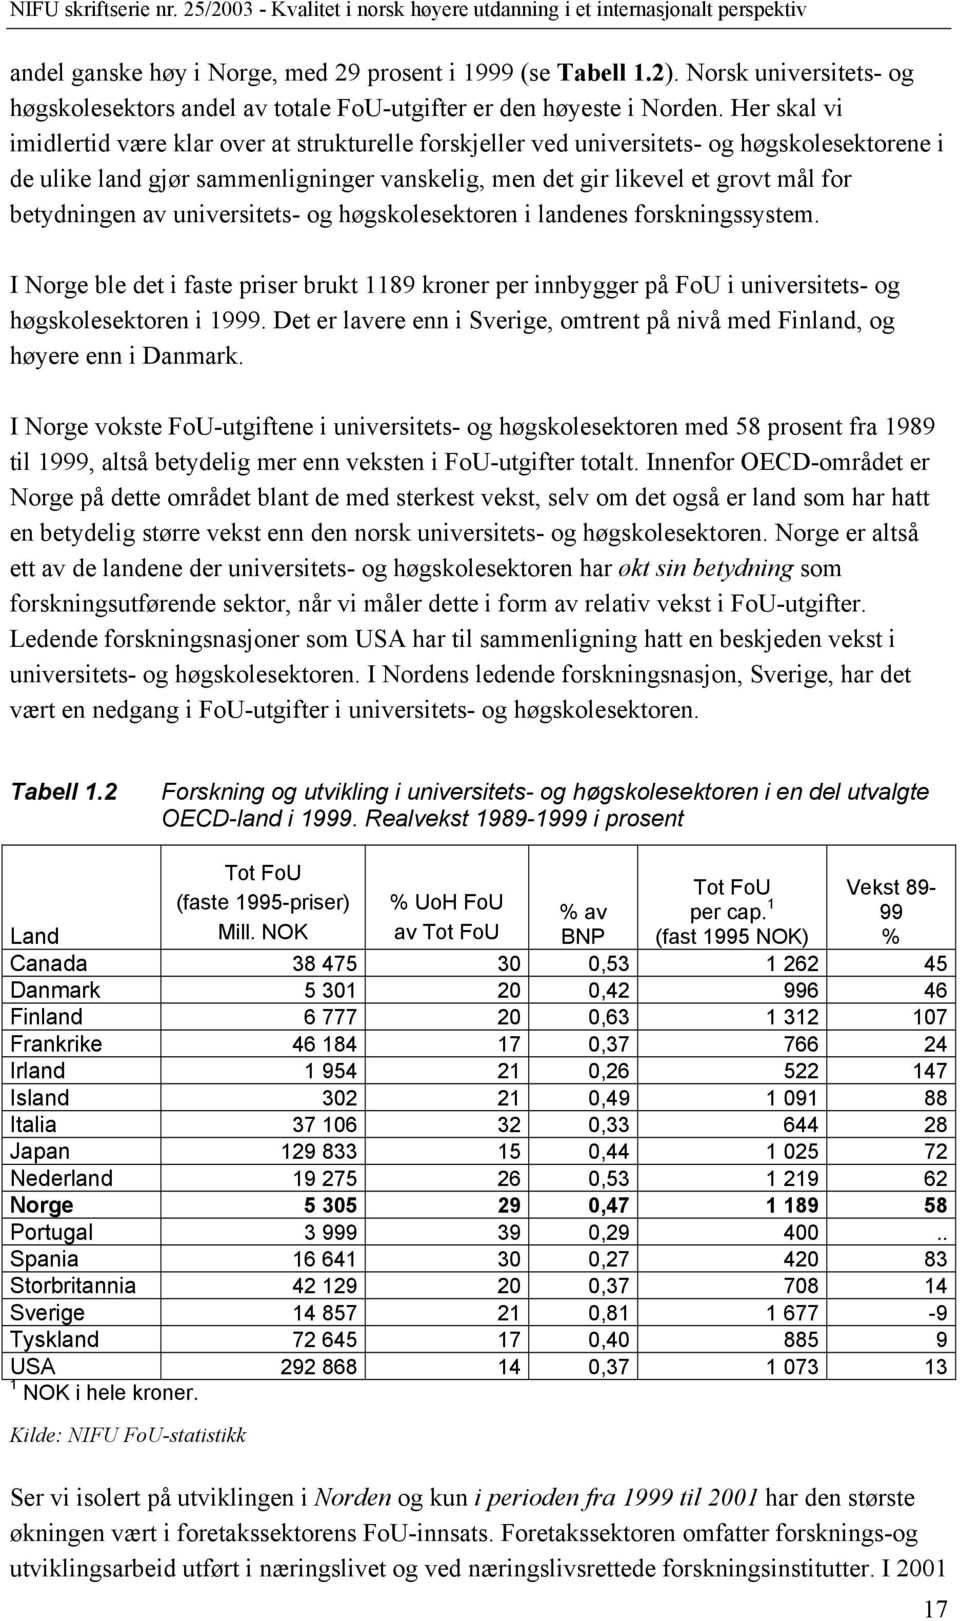 betydningen av universitets- og høgskolesektoren i landenes forskningssystem. I Norge ble det i faste priser brukt 1189 kroner per innbygger på FoU i universitets- og høgskolesektoren i 1999.